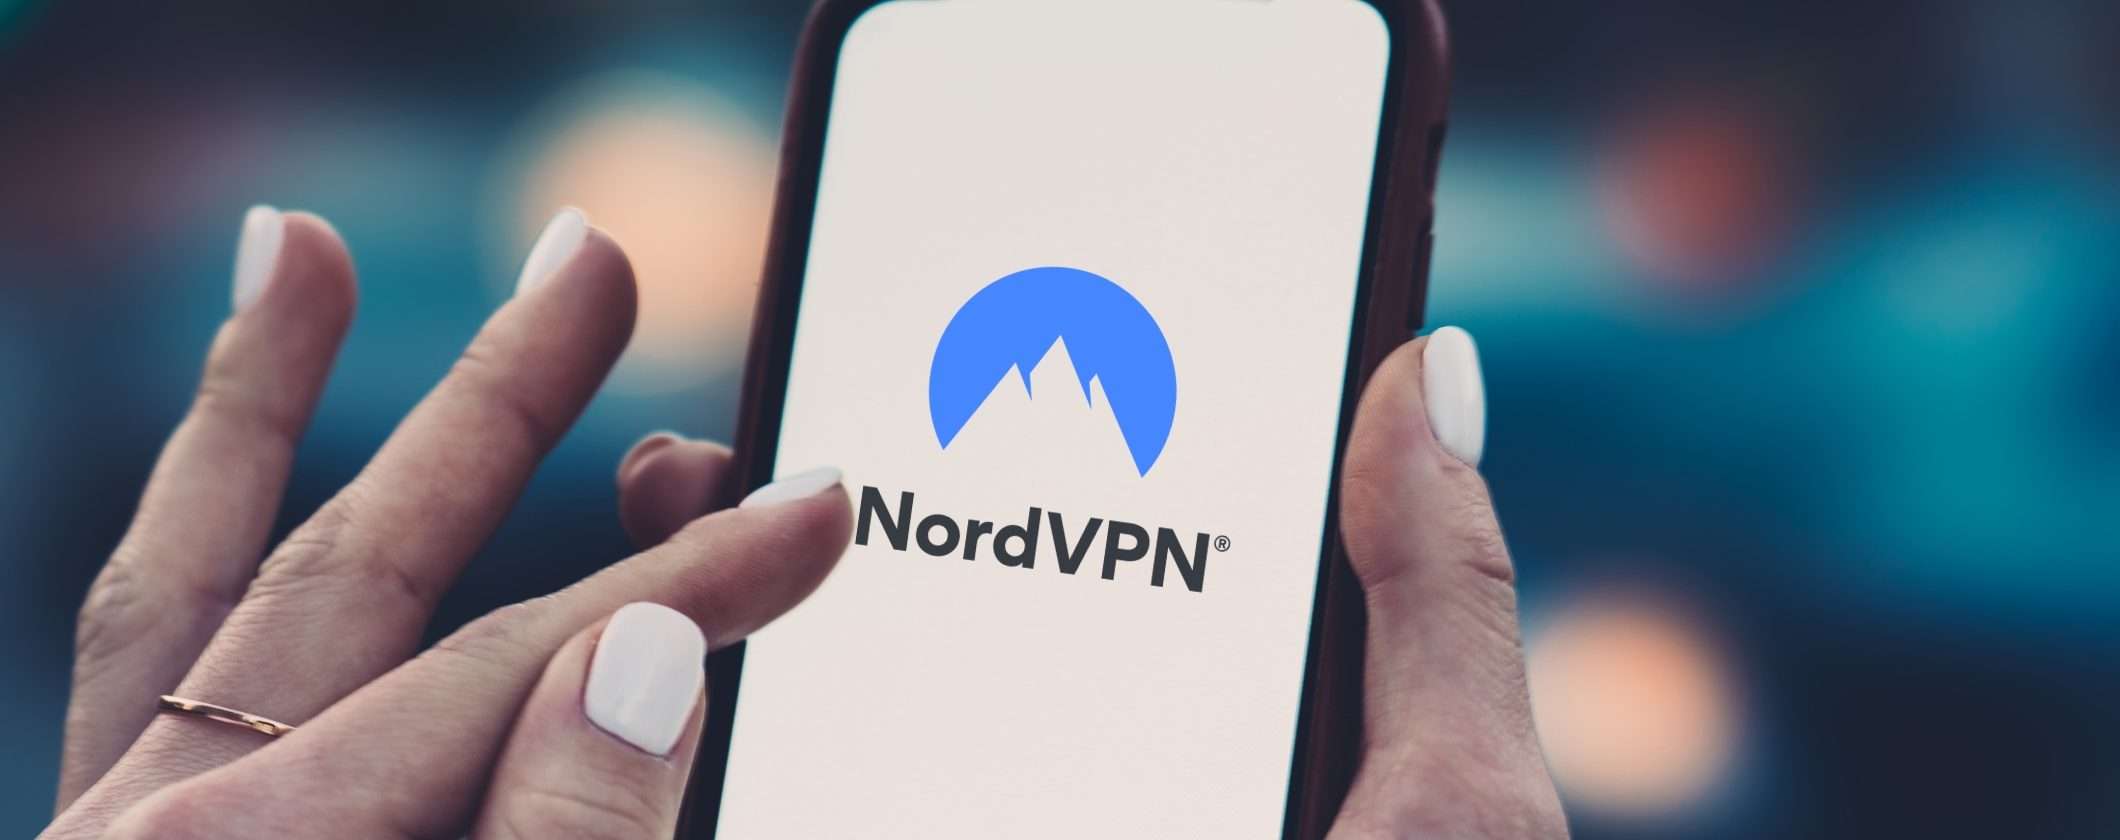 NordVPN: come non lasciare traccia sul web